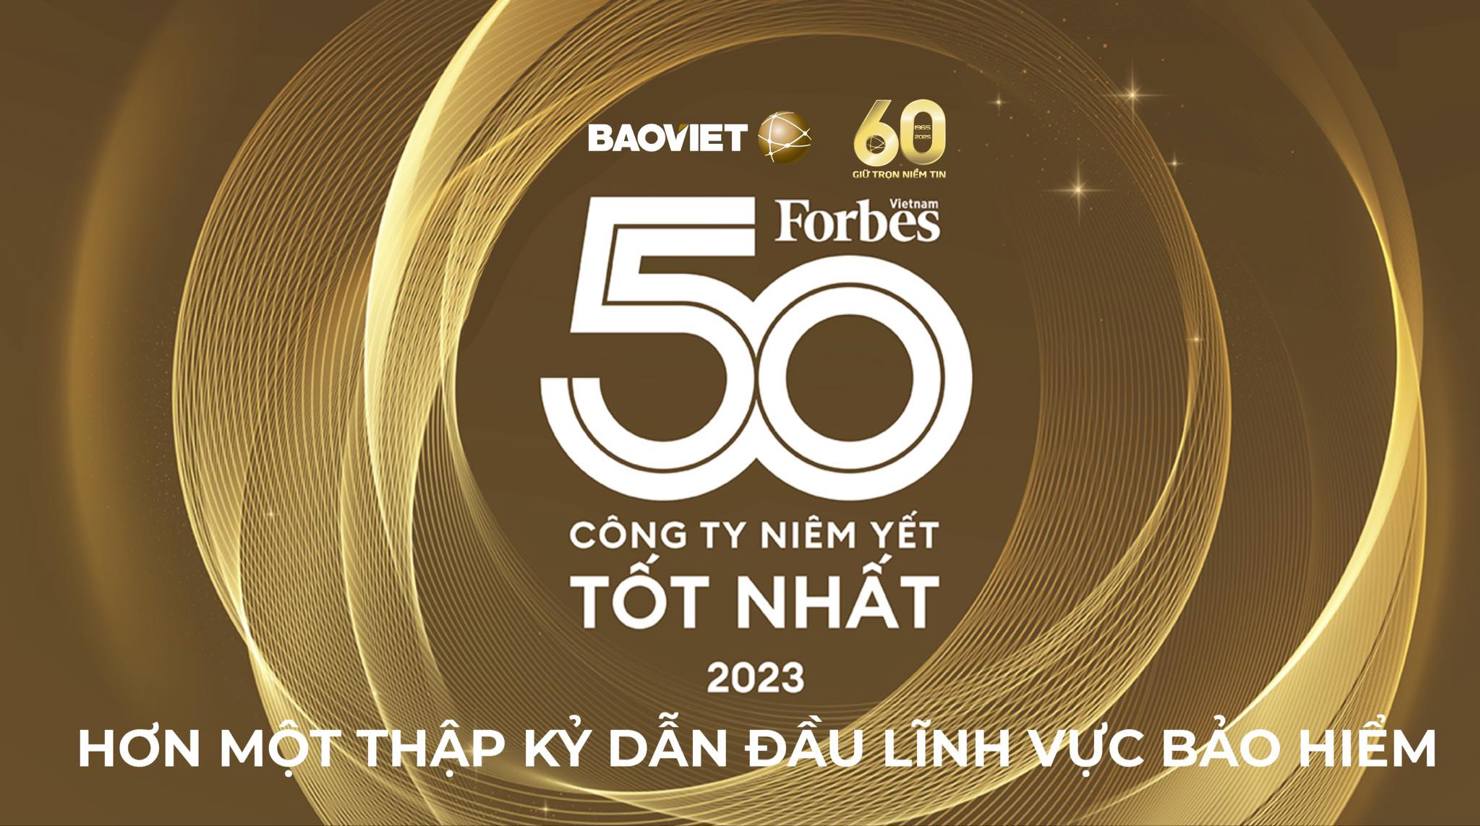 Hơn một thập kỷ liên tục, TâpBảo Việt - đứng đầu ngành bảo hiểm trong “Danh sách 50 công ty niêm yết tốt nhất” của Forbes